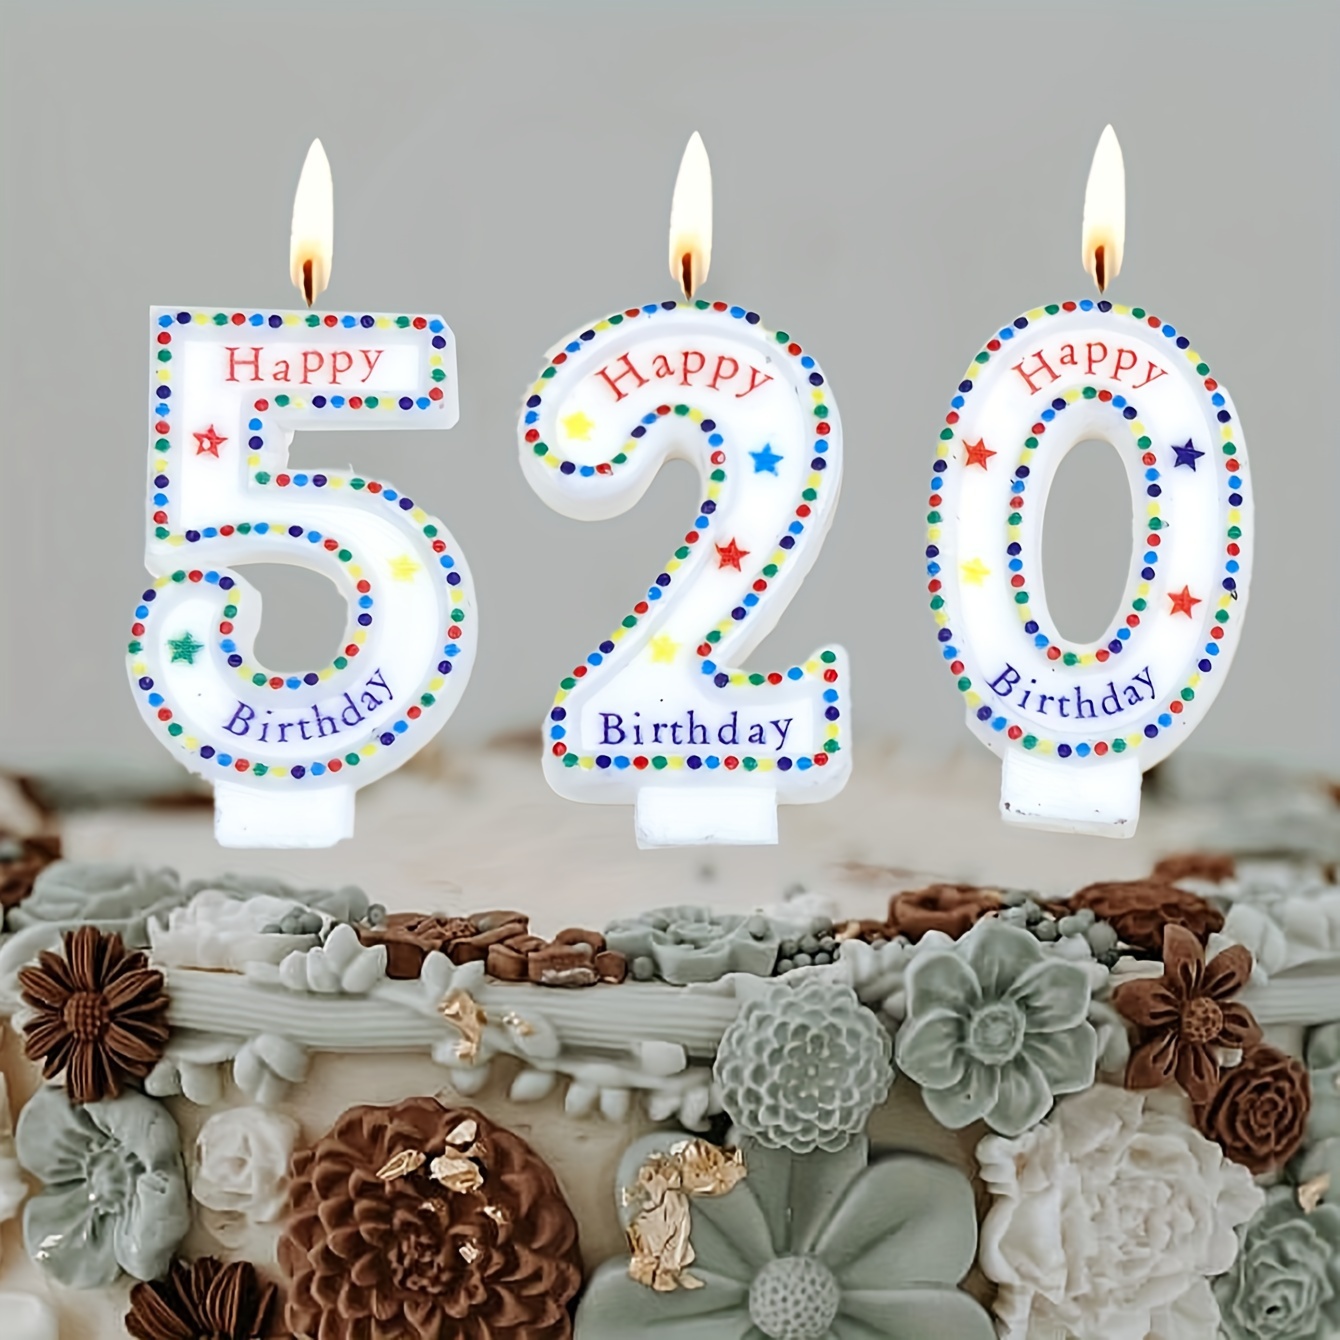 1pc, Candele Di Compleanno Numeri D'oro 0-9 Senza Fumo Per Torte Di  Compleanno, Feste E Dessert. Plugin Per Candele - Temu Italy